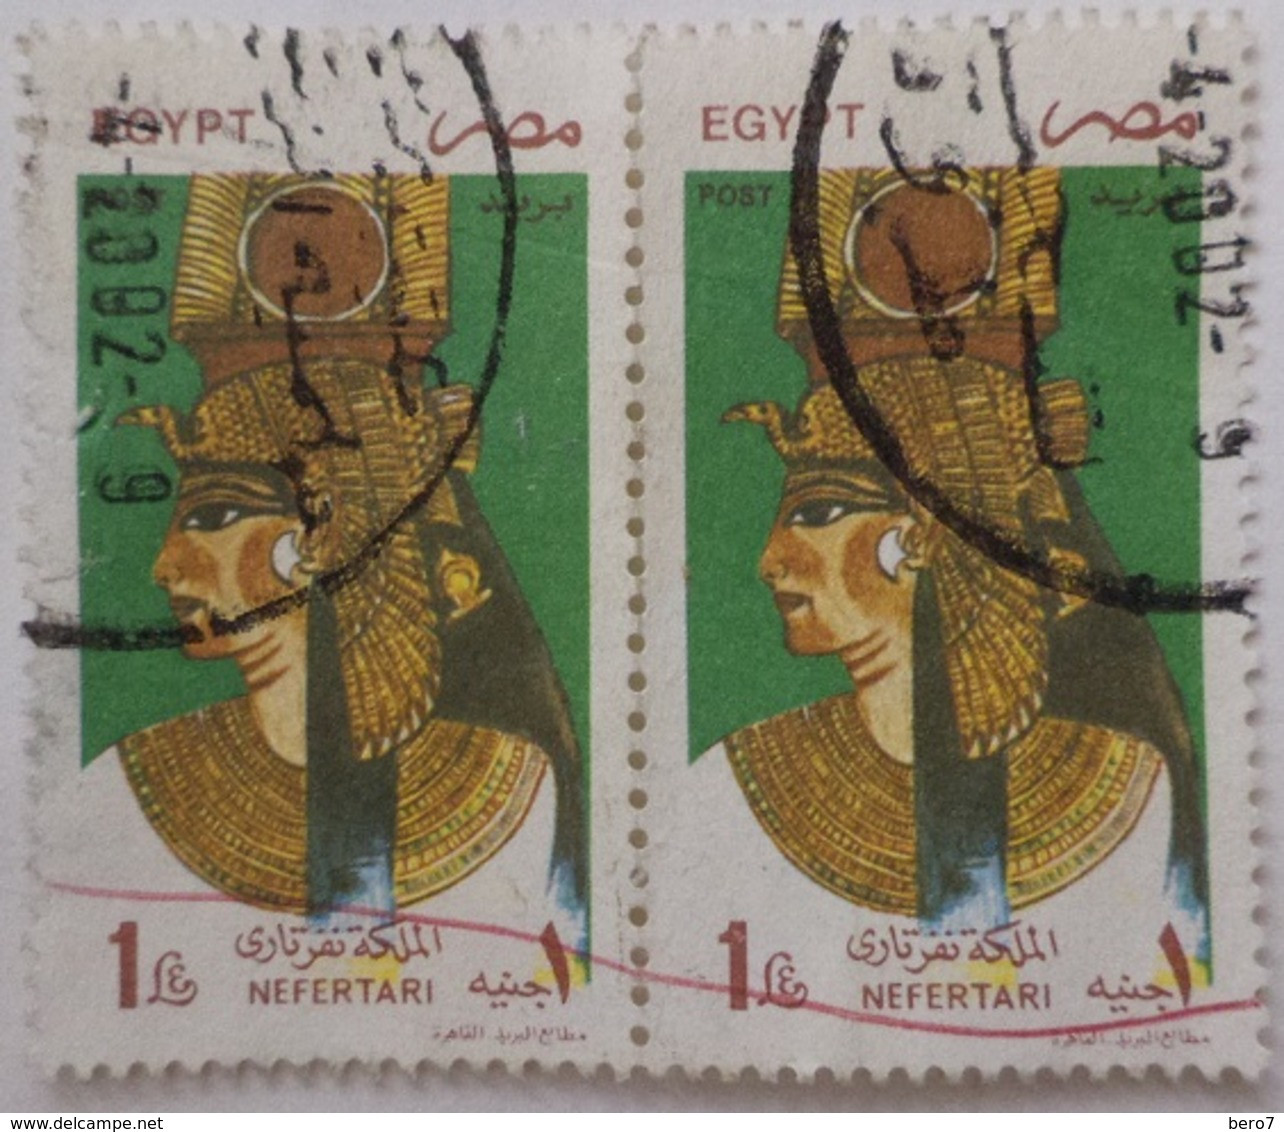 EGYPT - 1997- Queen Nefertai Wife Of Ramses II-  (Egypte) (Egitto) (Ägypten) (Egipto) (Egypten) - Usados